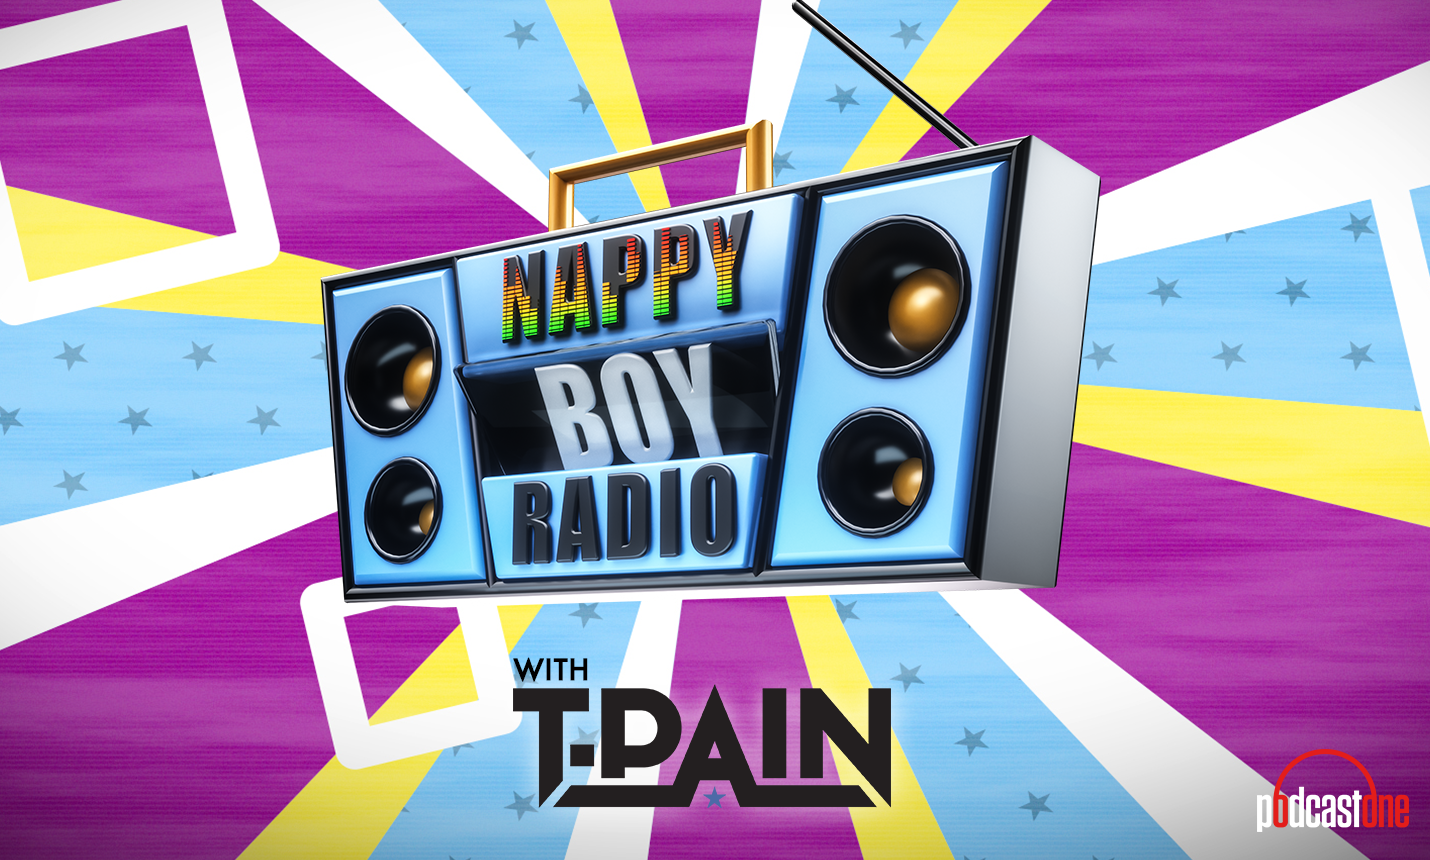 Nappy Boy Radio Podcast